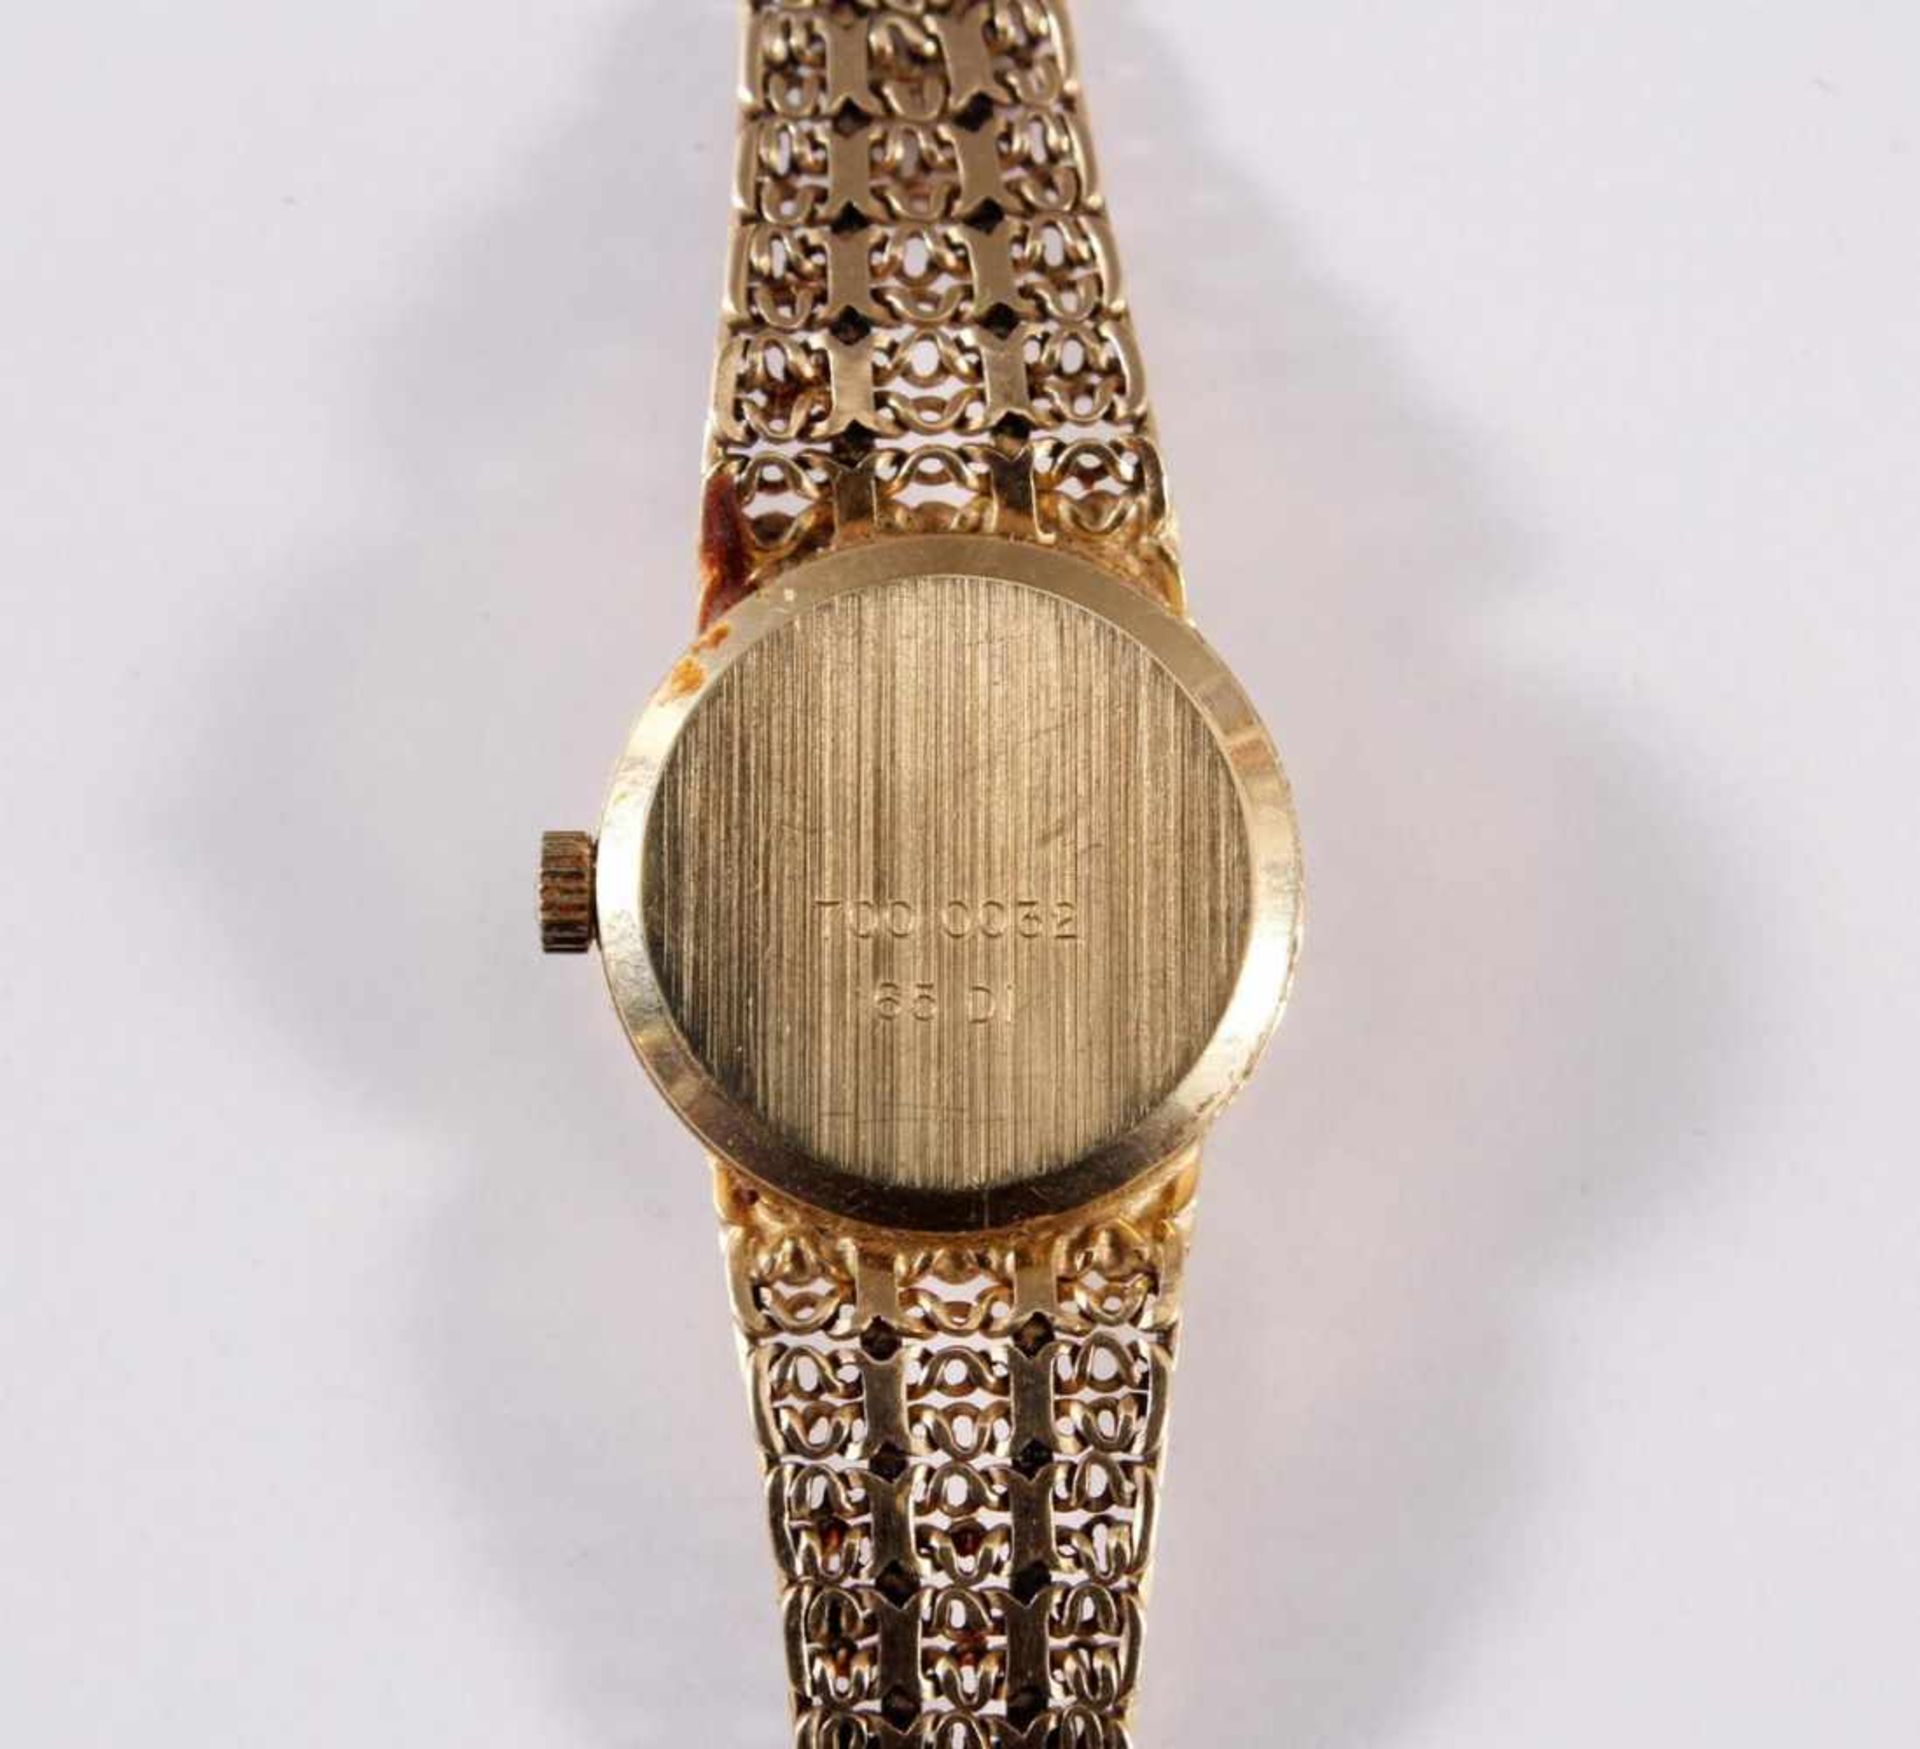 Damenarmbanduhr der Marke Sertina, 14 kt GelbgoldAm Verschluss punziert 585, auf dem Uhrendeckel - Bild 5 aus 5